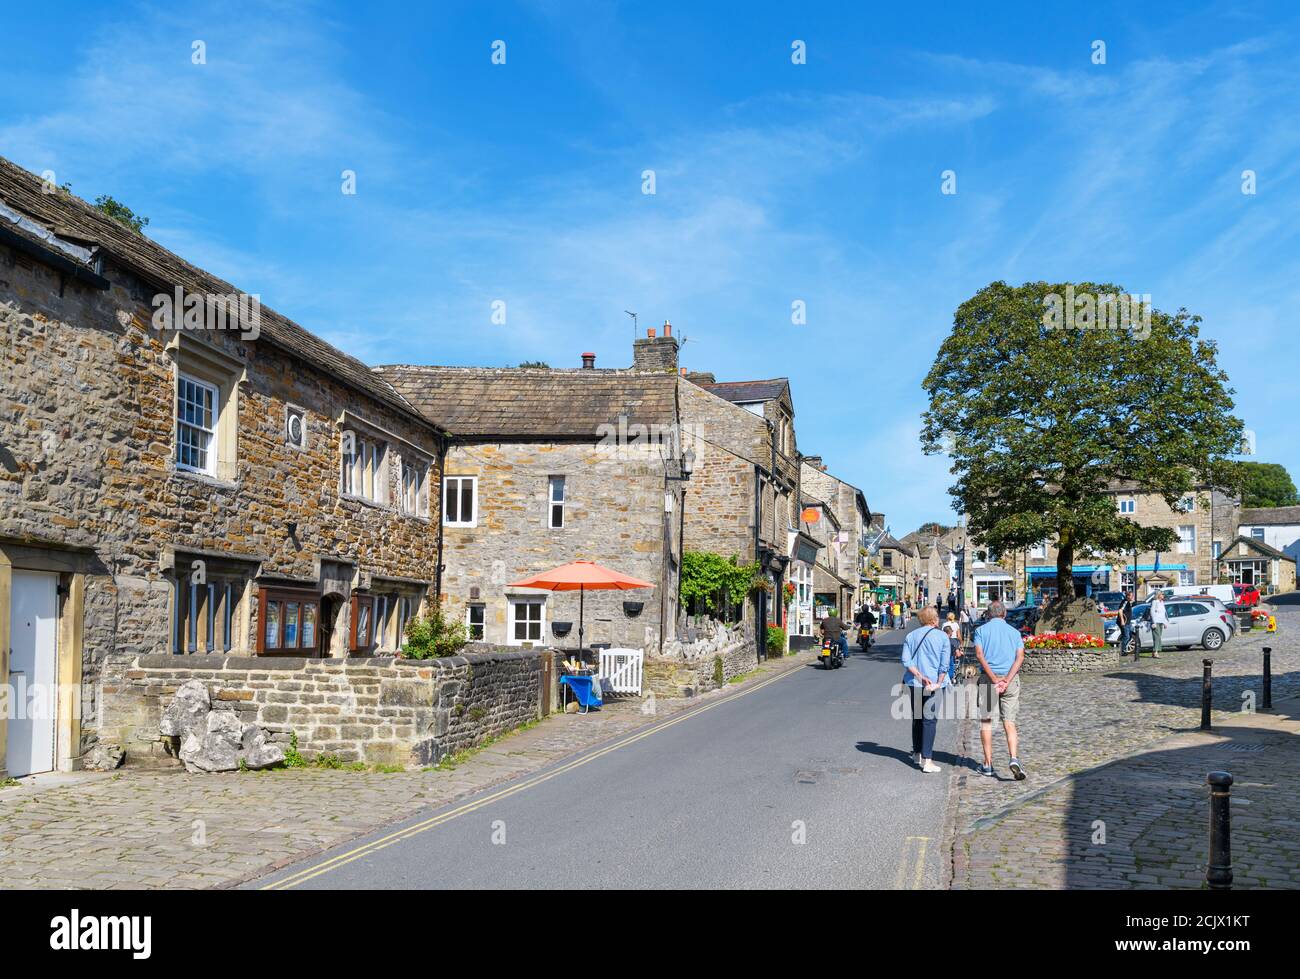 The Square und Main Street im traditionellen englischen Dorf Grassington, Wharfedale, Yorkshire Dales National Park, North Yorkshire, England, Großbritannien Stockfoto